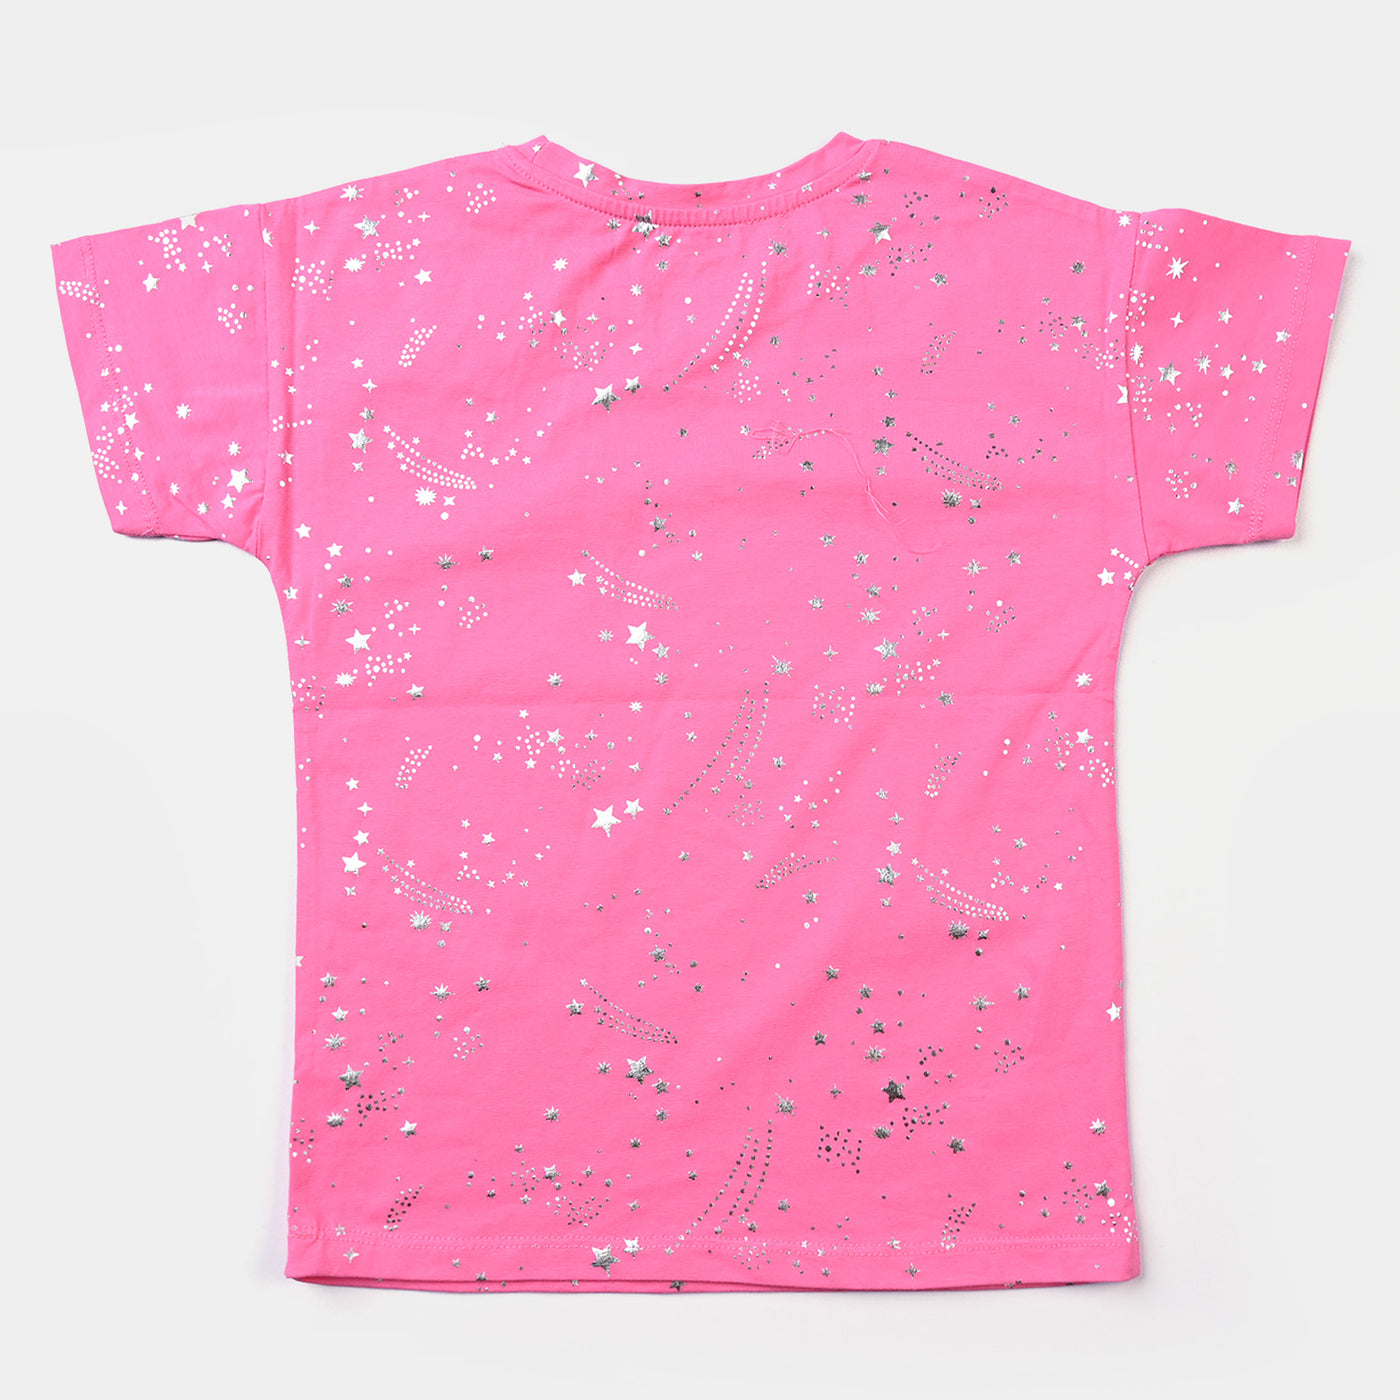 Girls Cotton Jersey T-Shirt H/S Stars-Pink